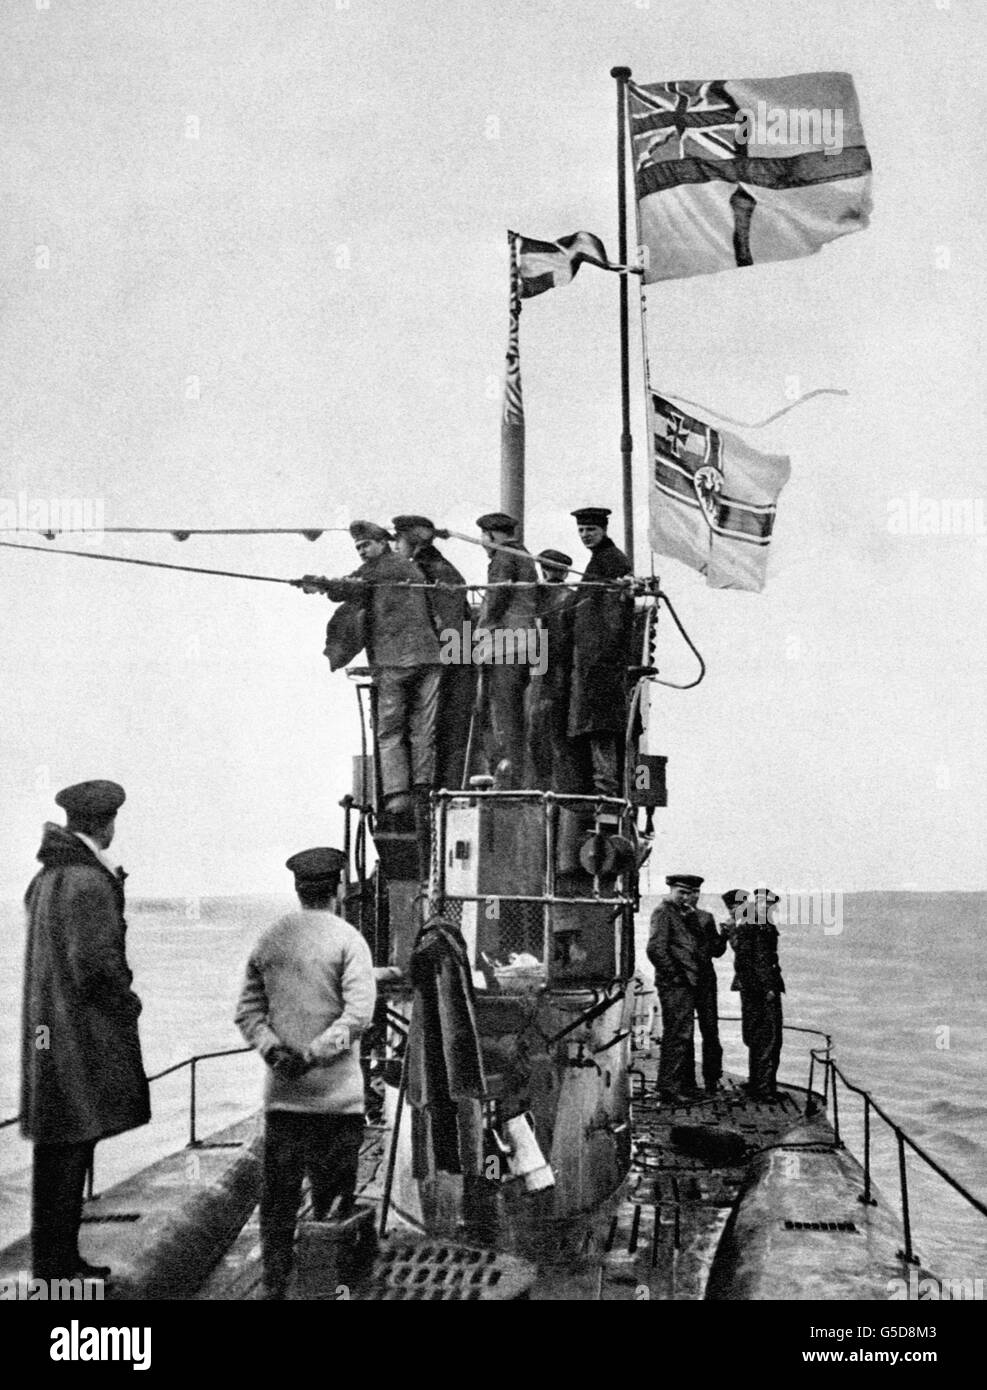 Vista della resa del sottomarino tedesco U-48 alla Royal Navy al porto Essex di Harwich. La U-48 era una delle 39 U-Boats da cedere, la maggior parte di loro in perfette condizioni. La White Ensign può essere vista volare sopra la bandiera imperiale della Marina militare tedesca. Foto Stock